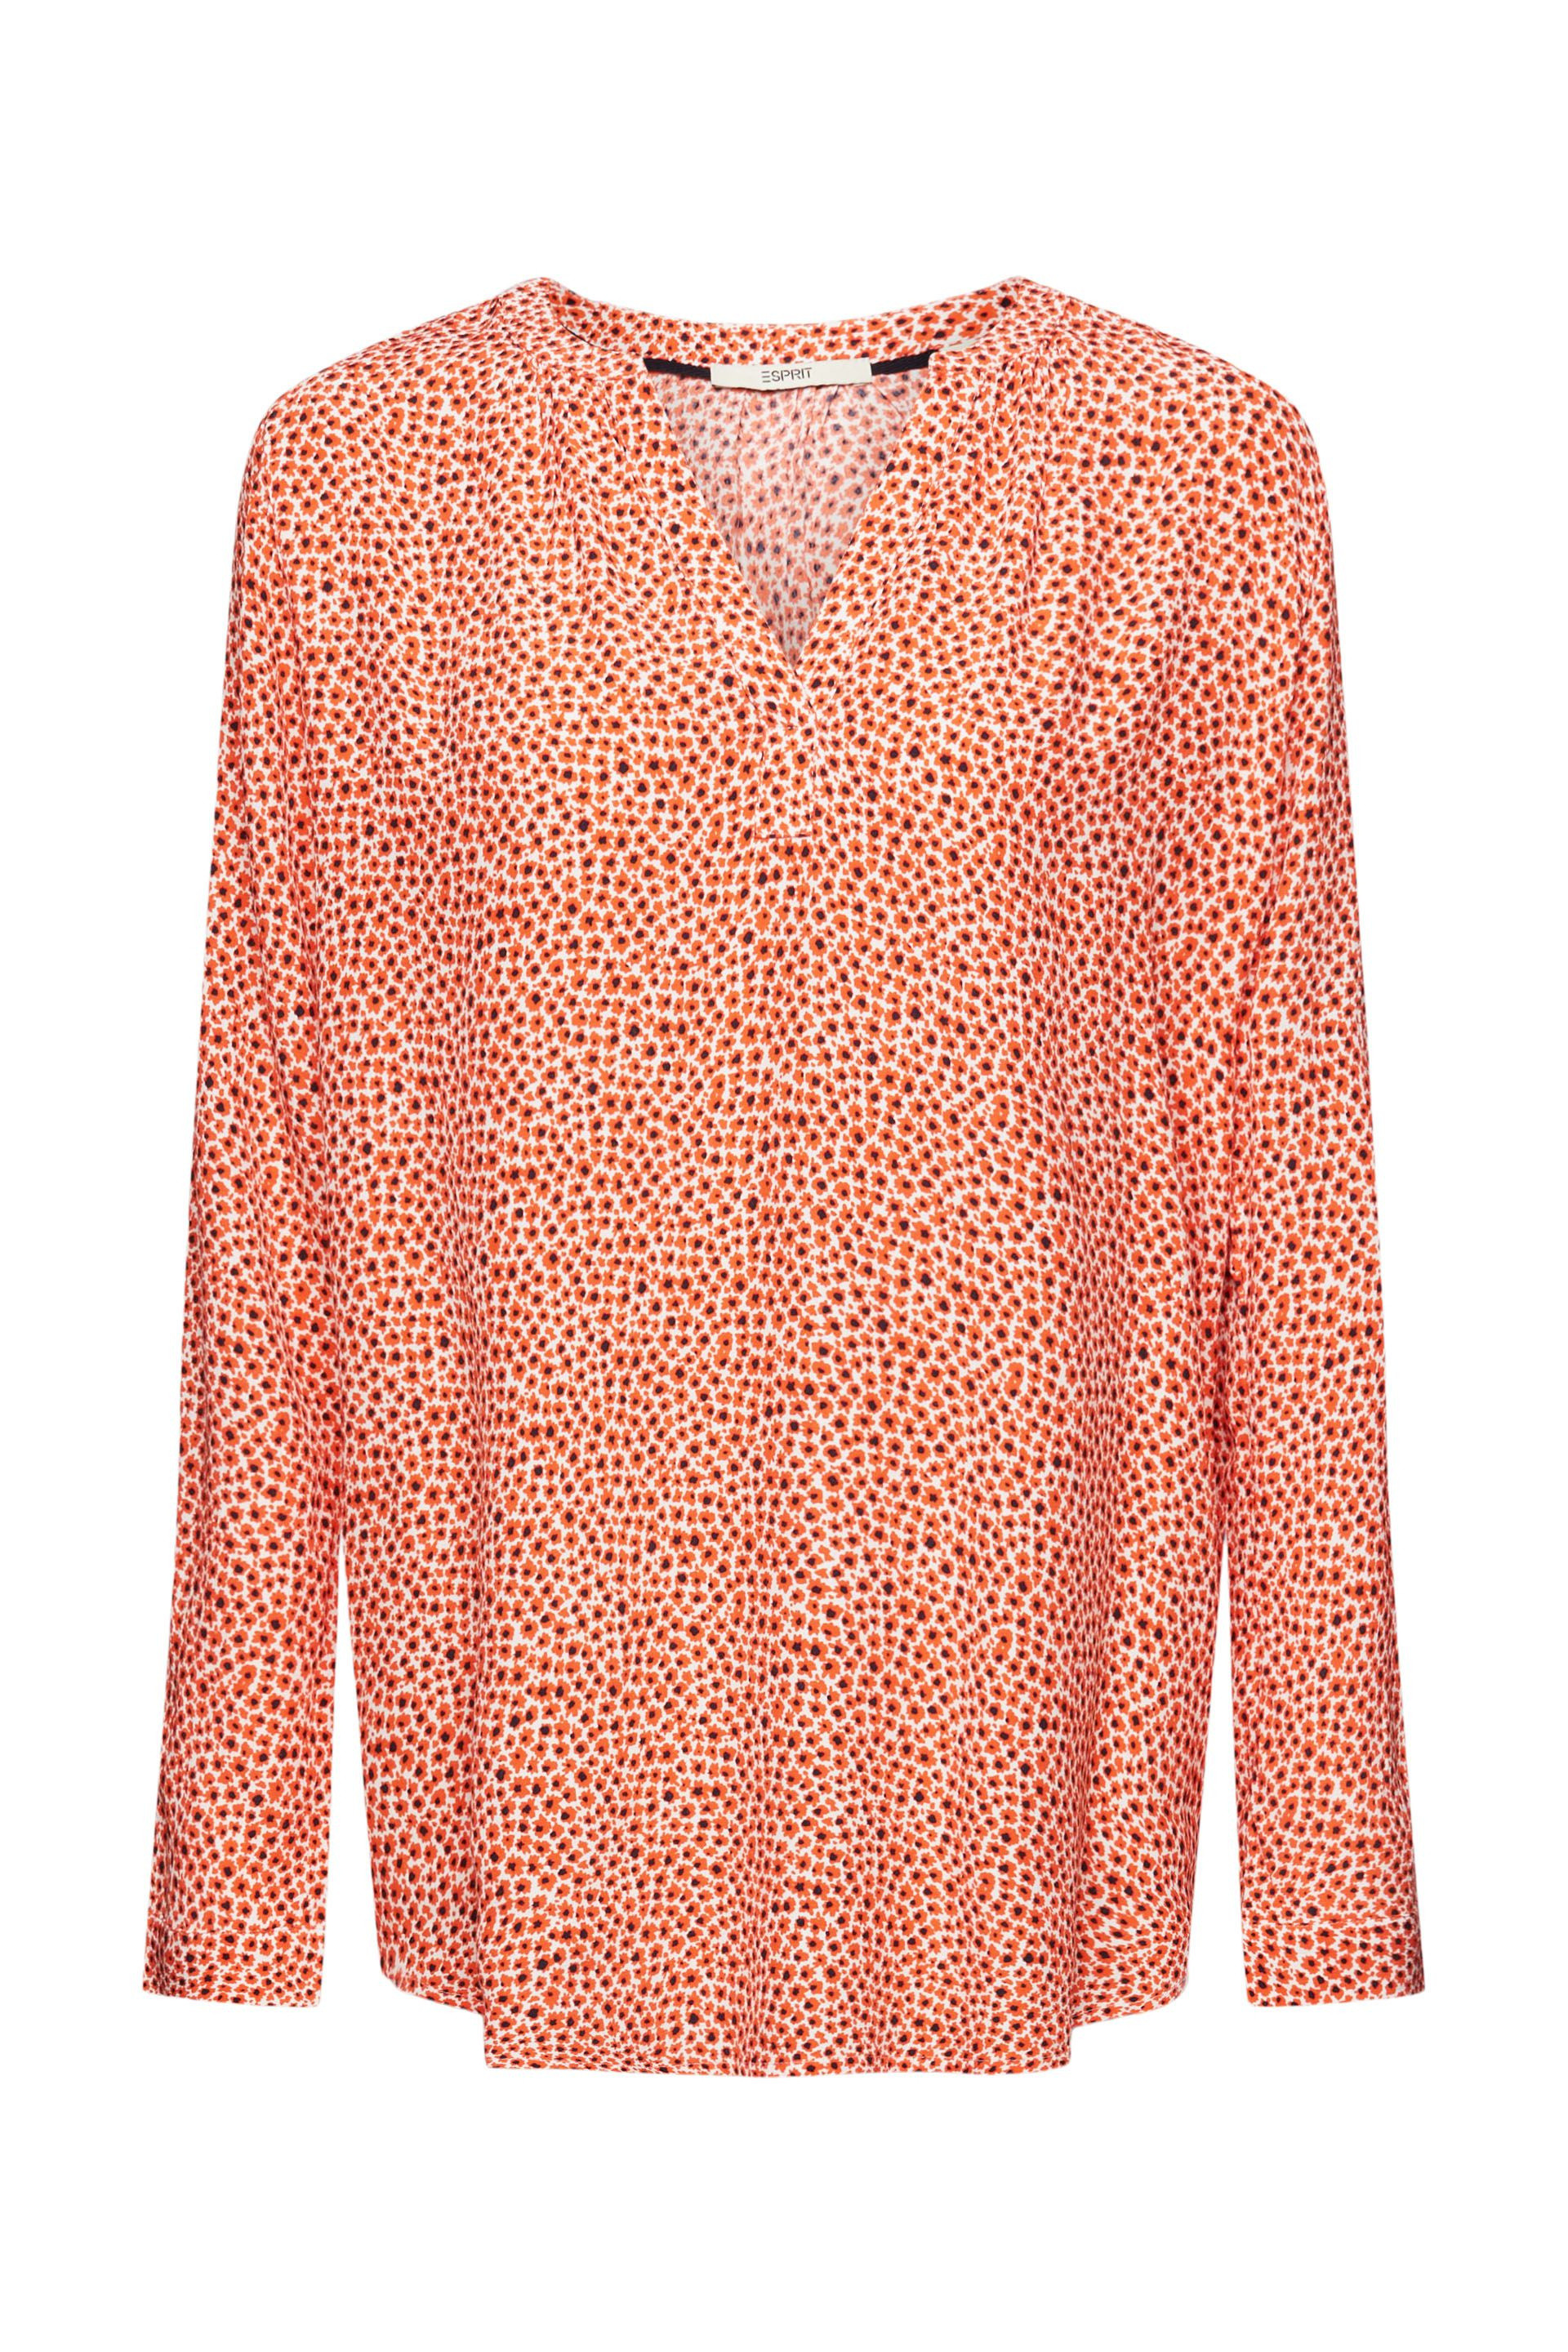 Esprit - Camicia floreale con scollo a V, Arancione, large image number 0